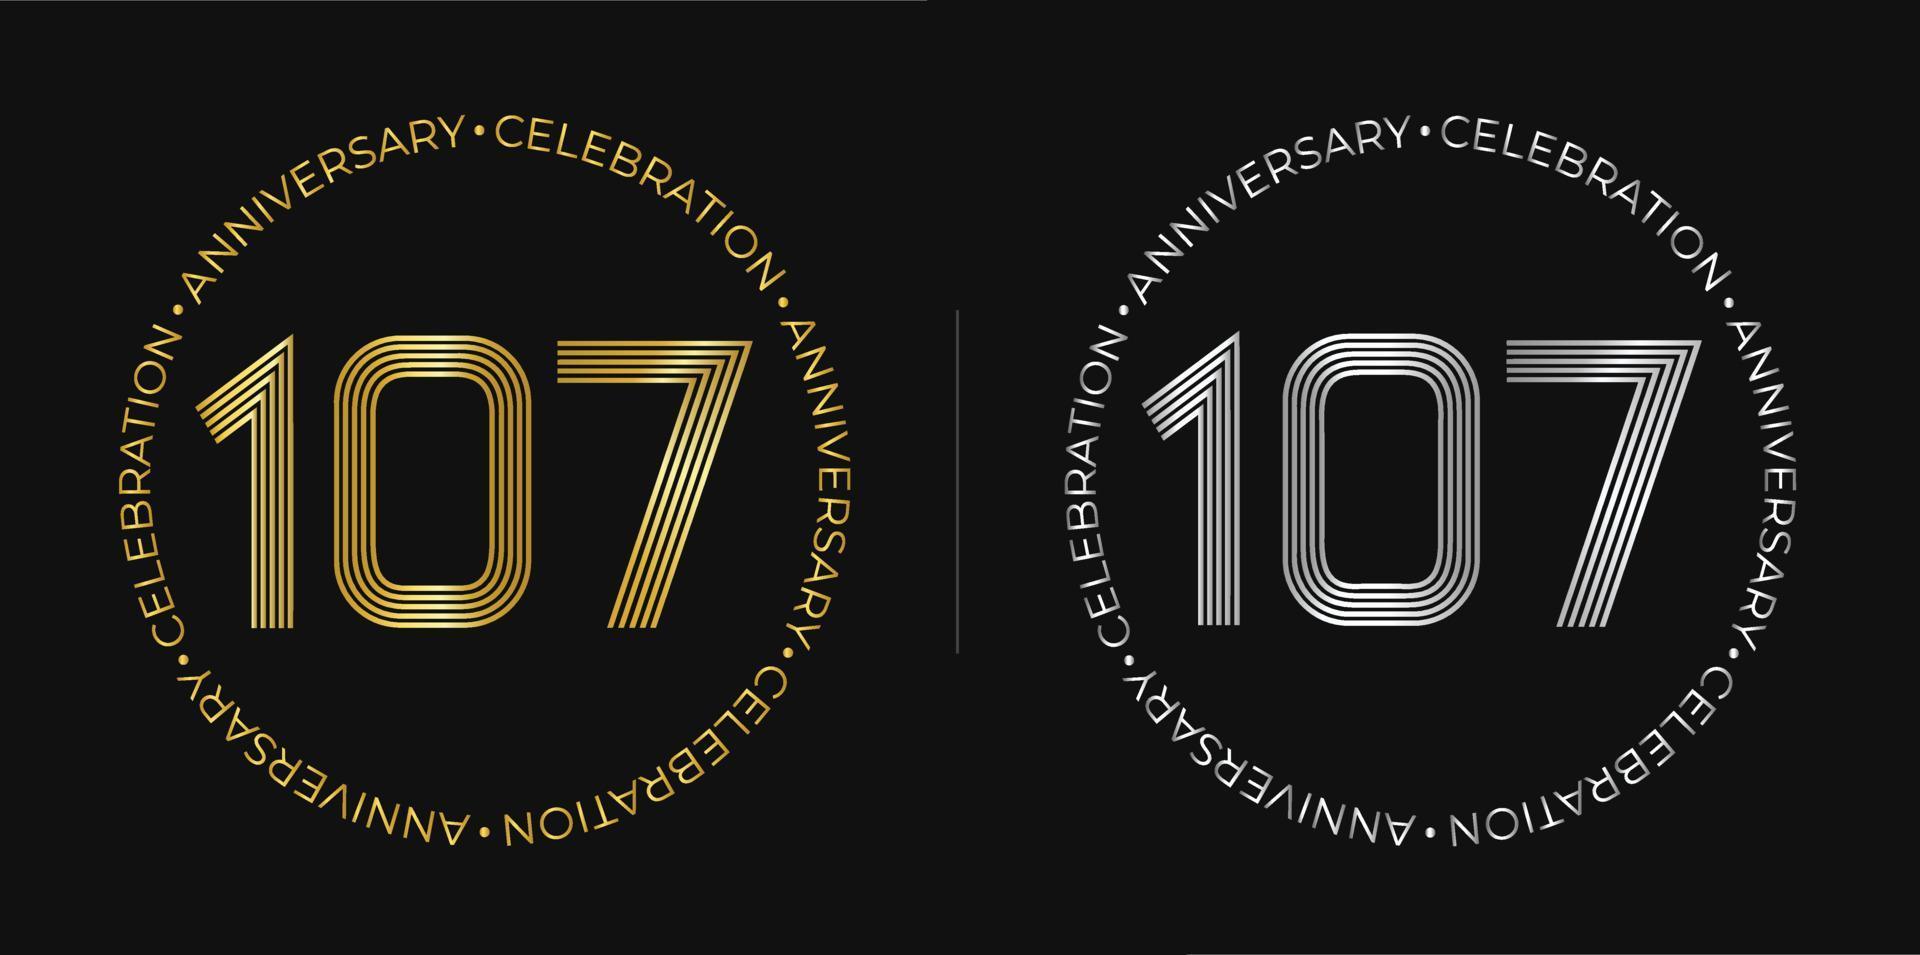 107º aniversário. banner de comemoração de aniversário de cento e sete anos nas cores douradas e prateadas. logotipo circular com design de números originais em linhas elegantes. vetor